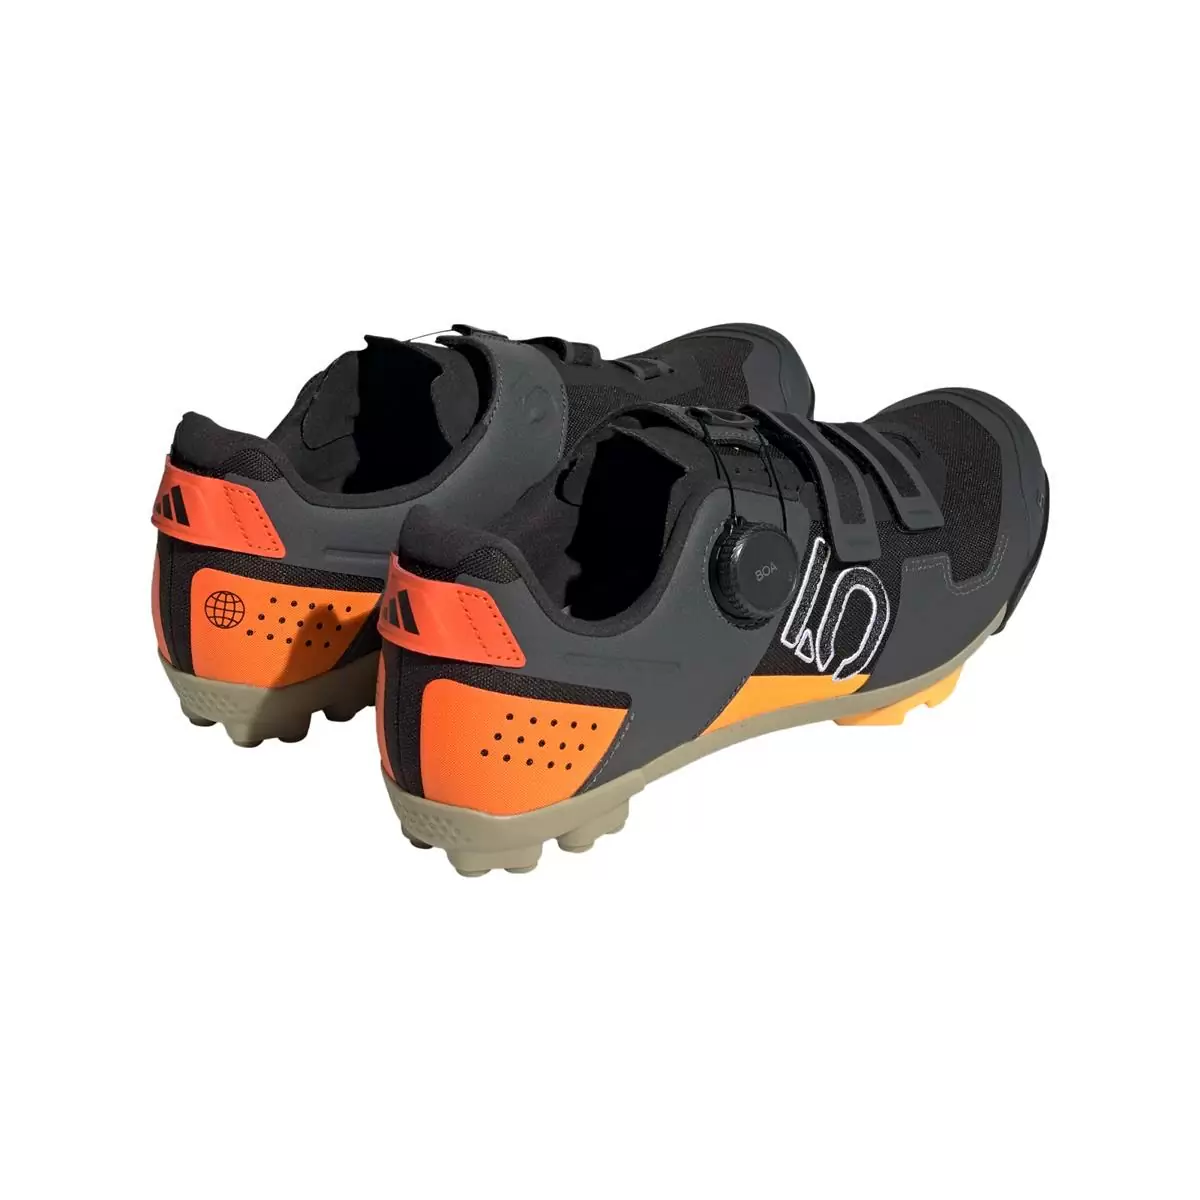 Clip 5.10 Kestrel Boa MTB-Schuhe Schwarz/Orange Größe 40 #4